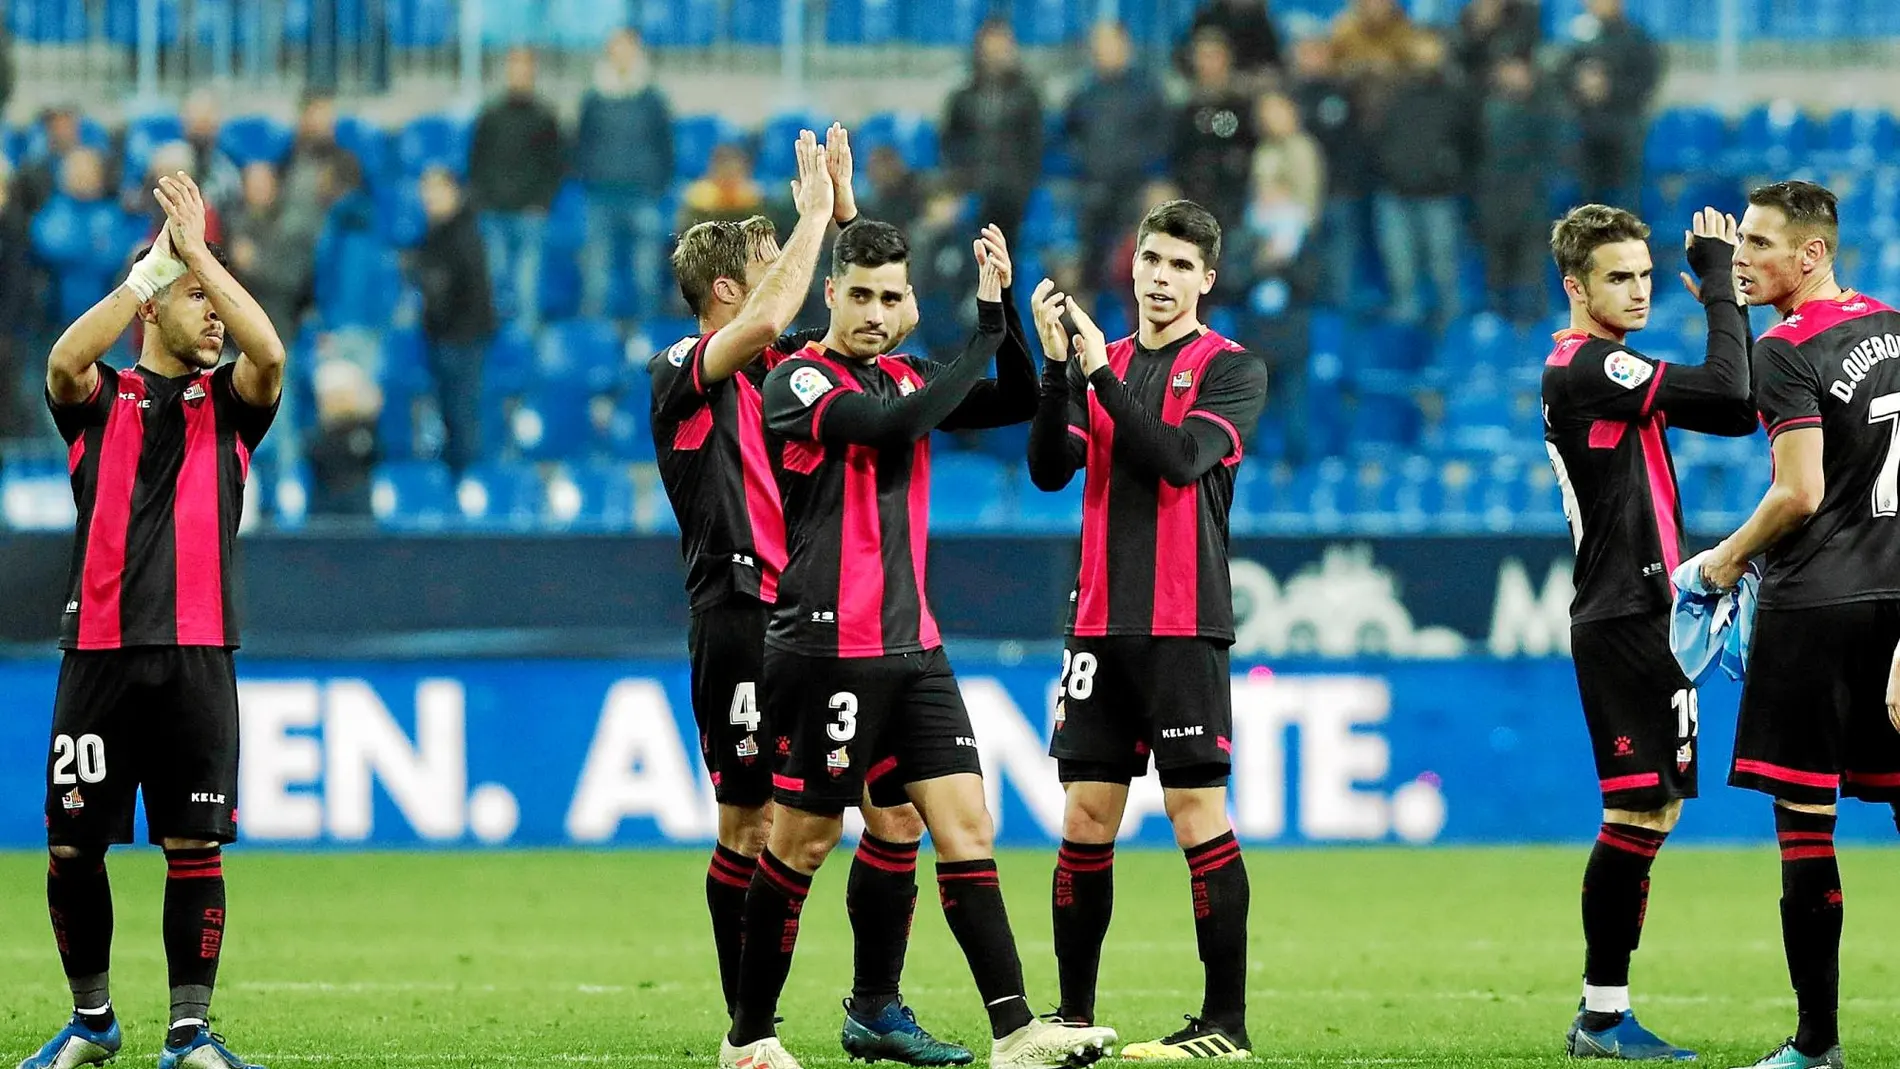 Los jugadores del Reus, en uno de los últimos partidos que disputaron en Segunda / LaLiga